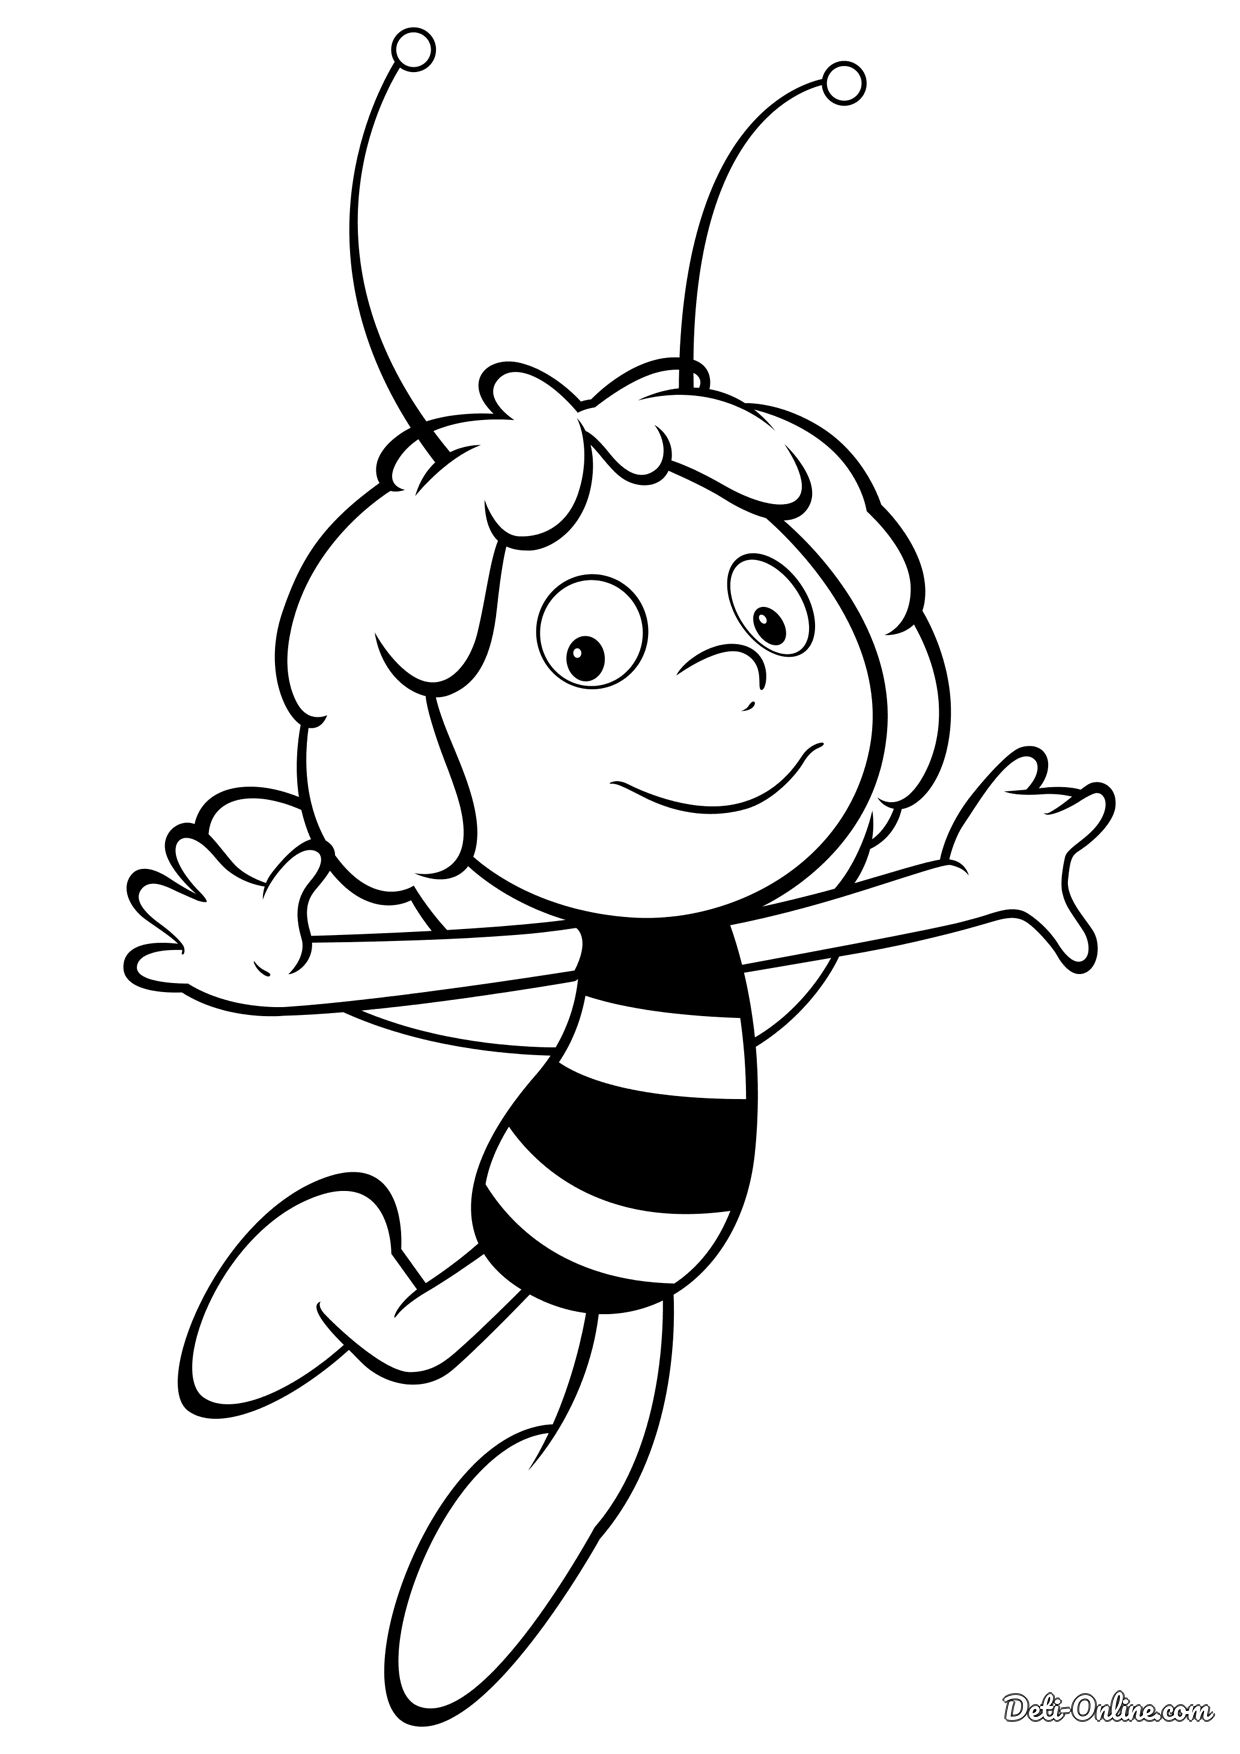 Раскраска пчелка для детей